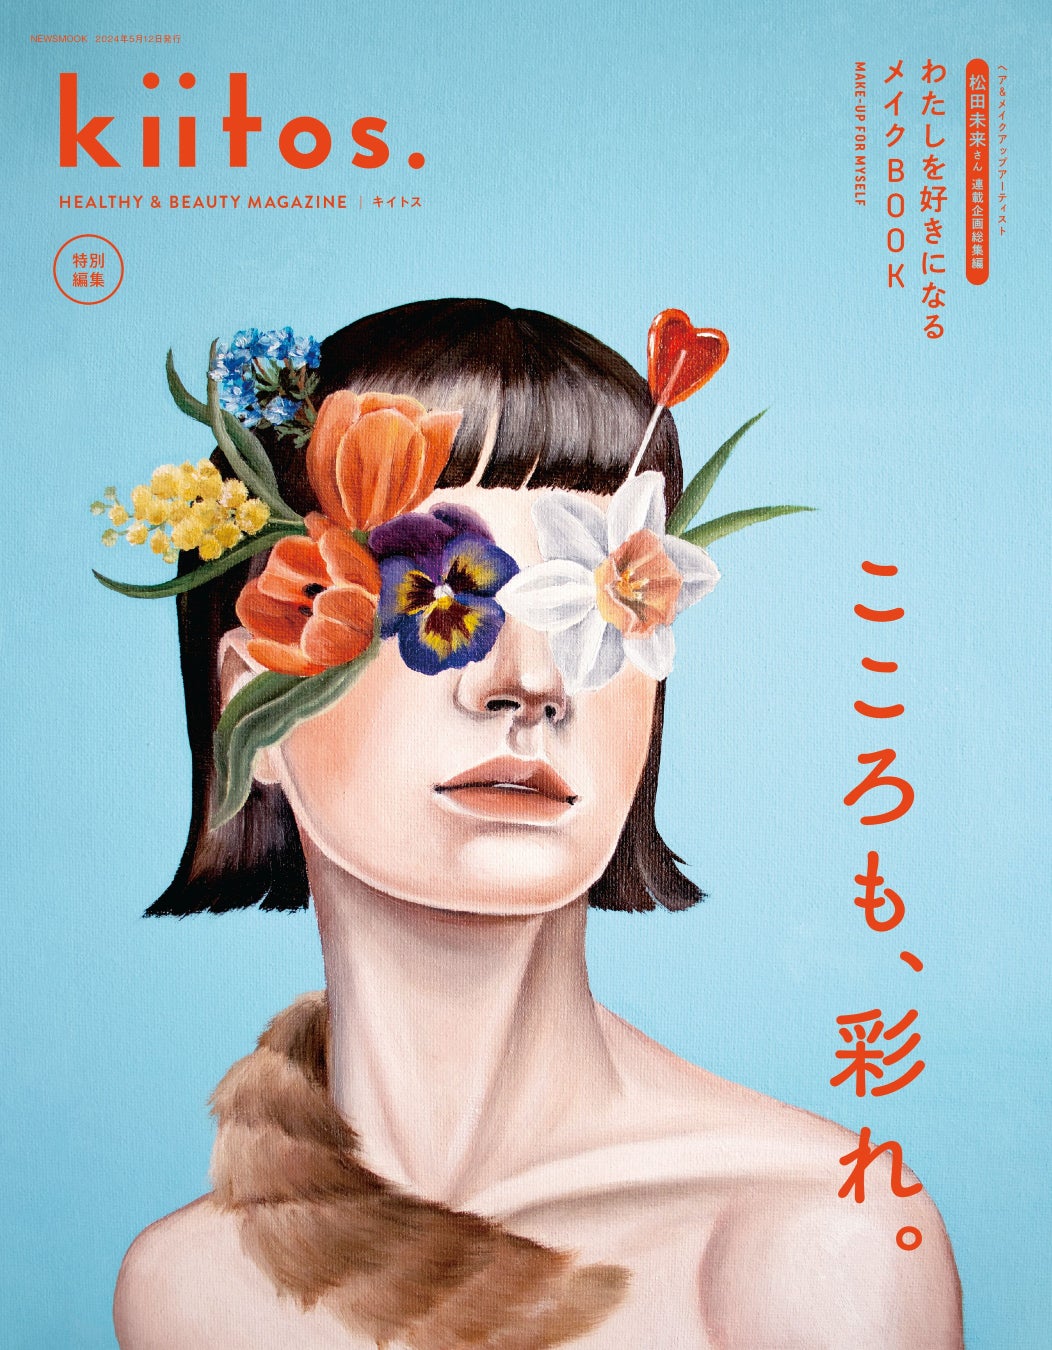 ヘアカラーのプロフェッショナル「樗木佑太」×「RYUSEI」の強力タッグで実現！全方位型の強烈発色新カラー「KIRATERA」を6月4日より発売